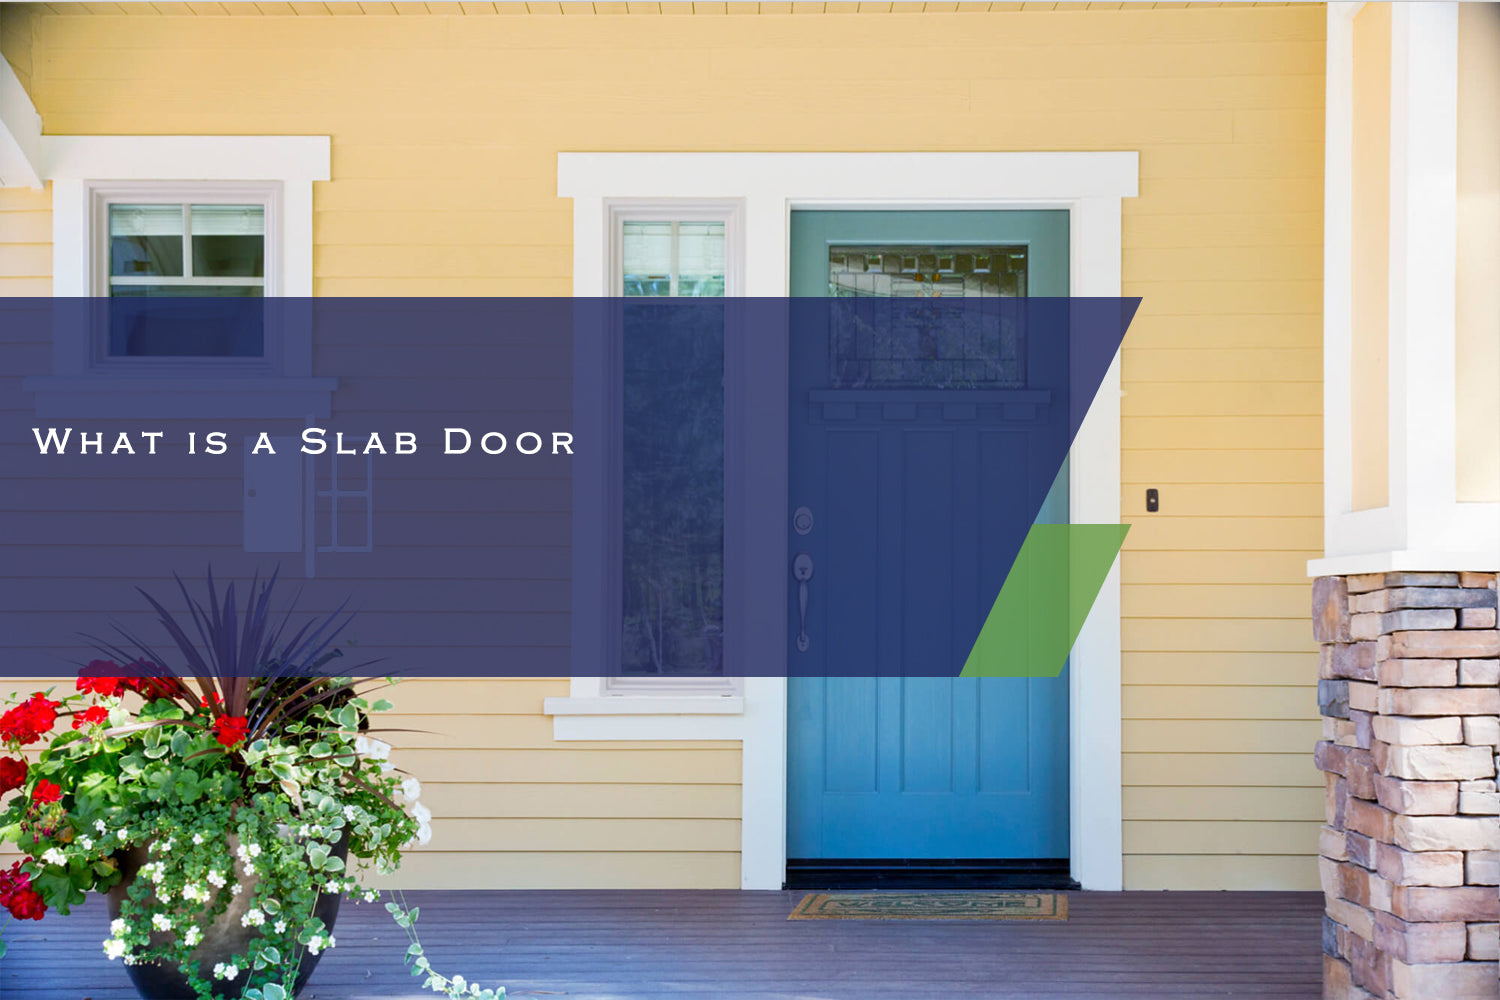 What is a Slab Door?